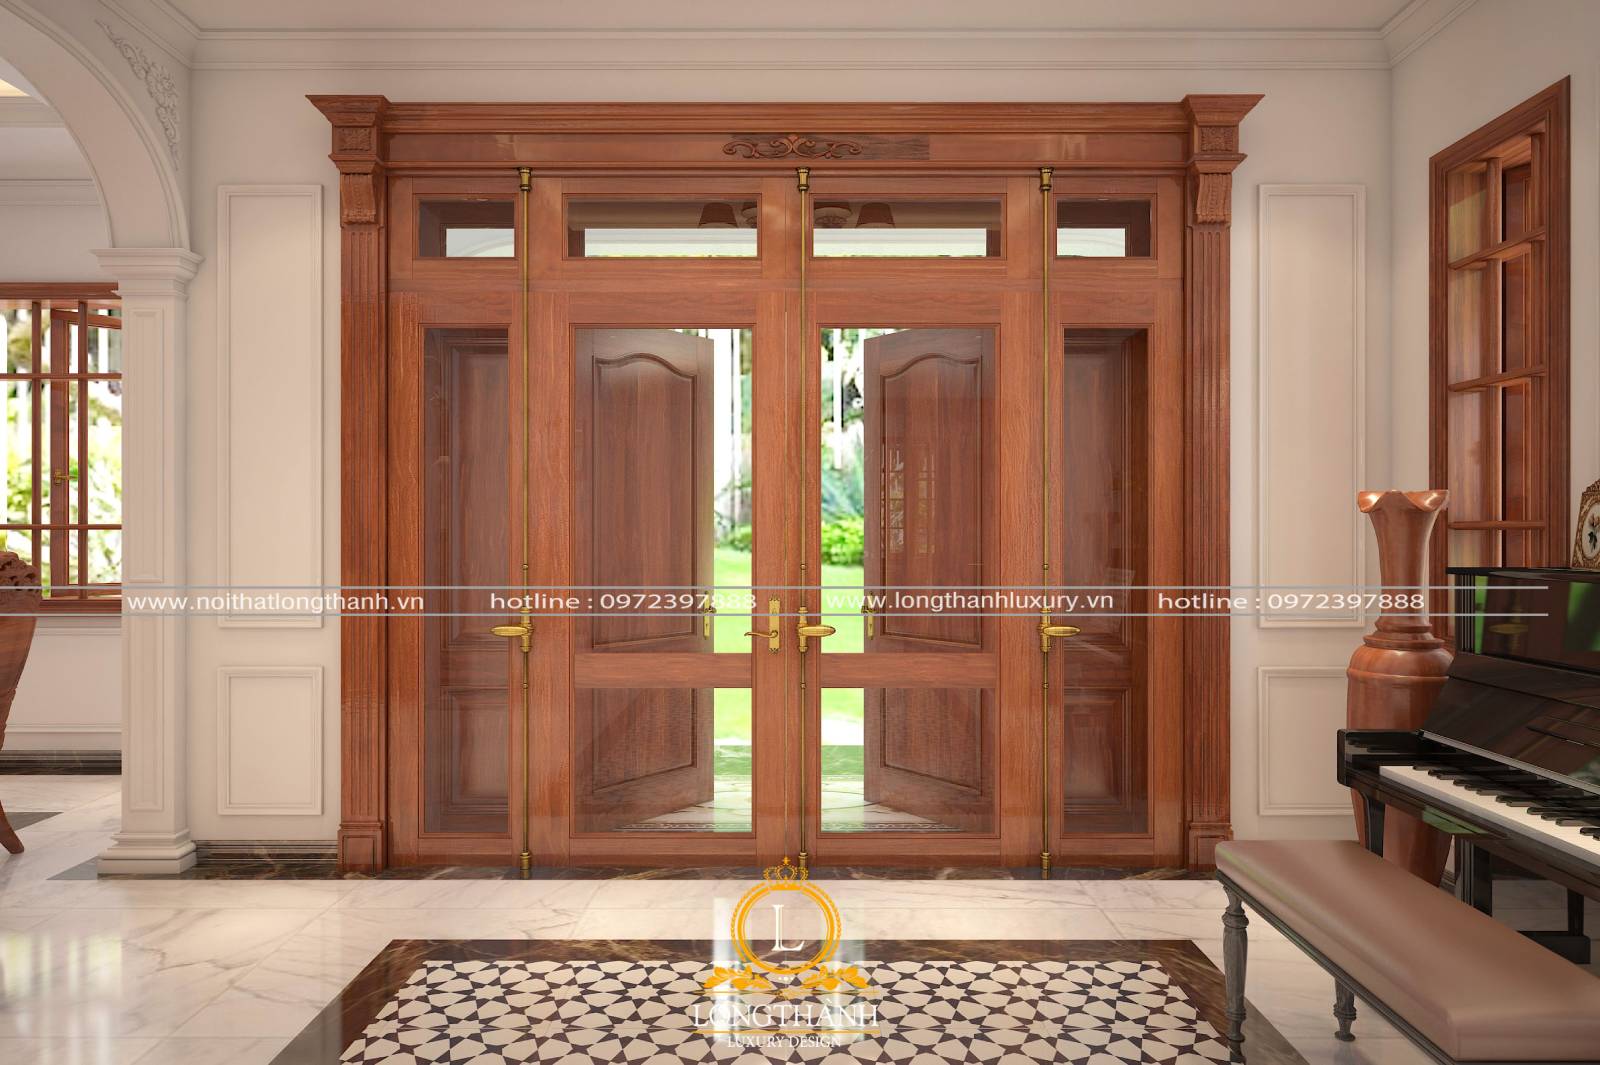 Thiêt kết cửa đinh chính bằng gỗ kính theo kiểu hiện đại cho nhà biệt thự rộng